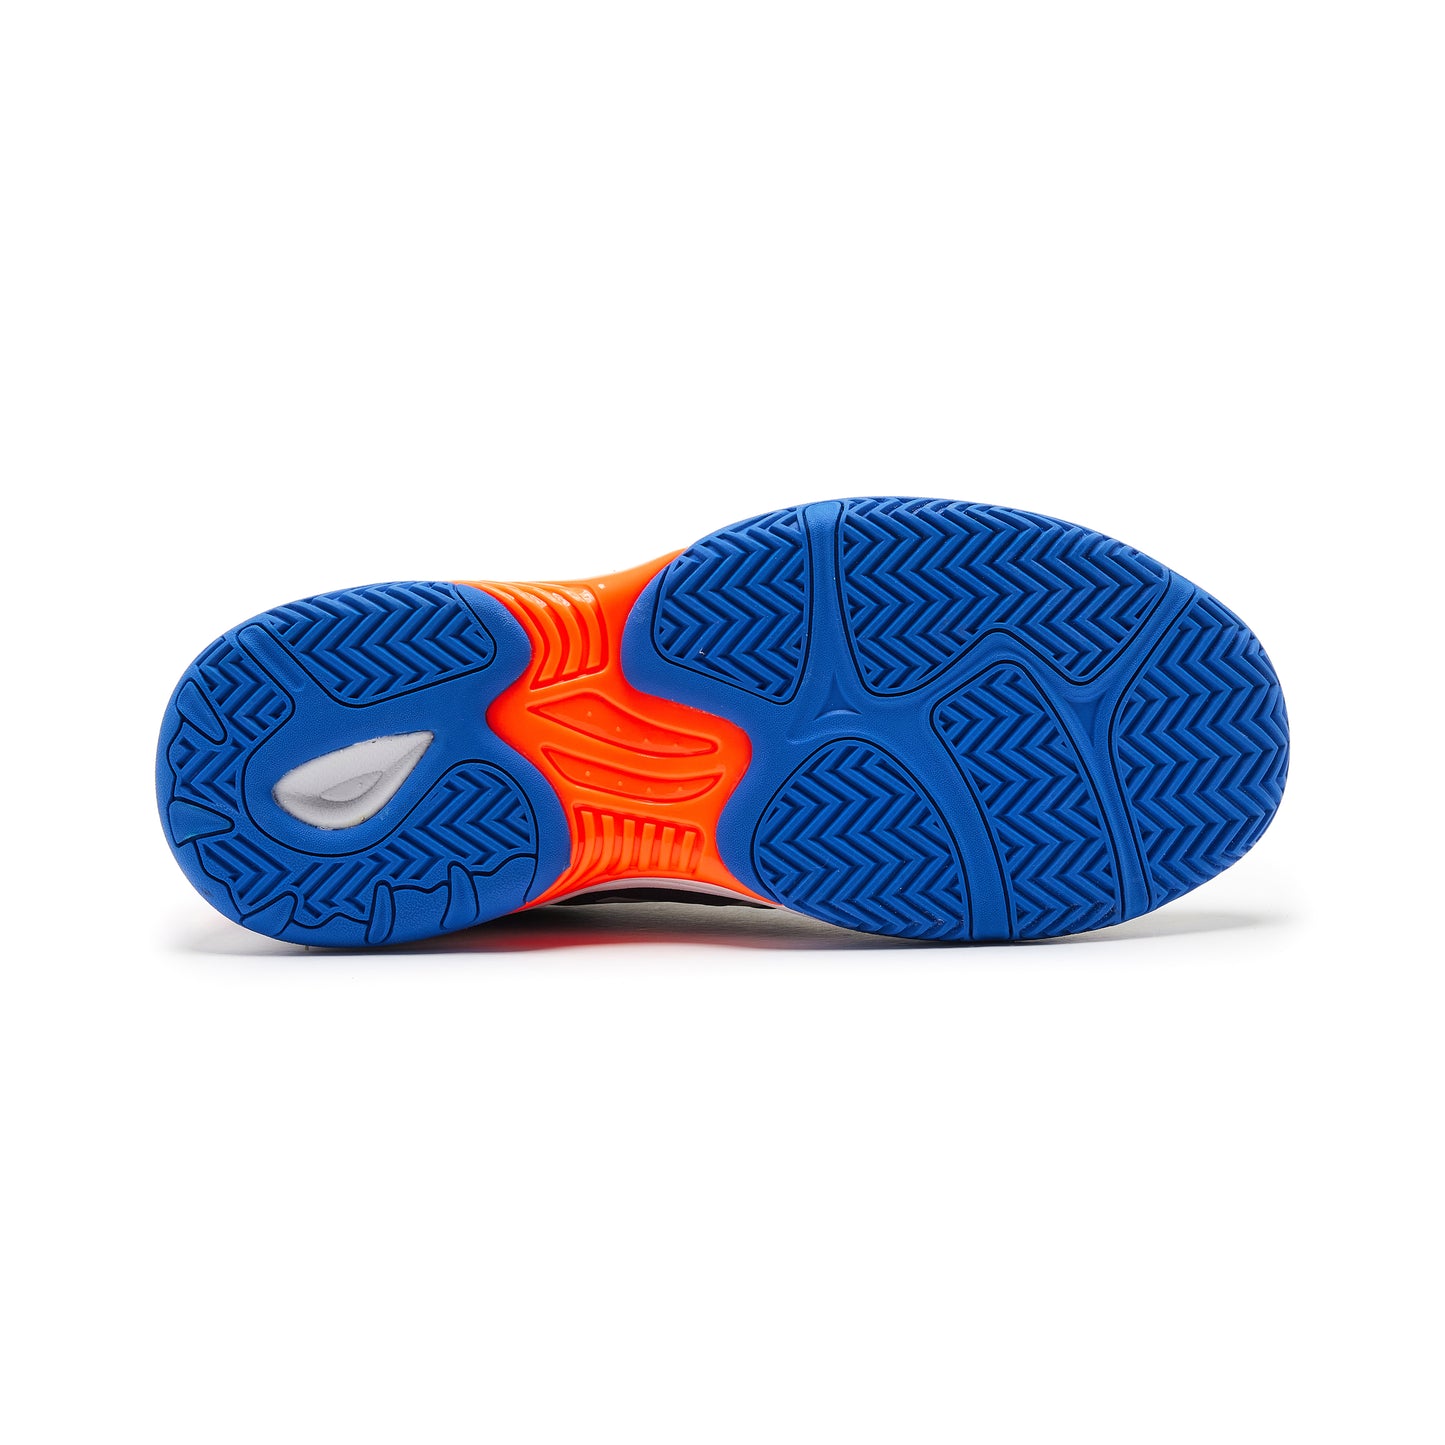 Surpass Padel Shoes Blue/Orange